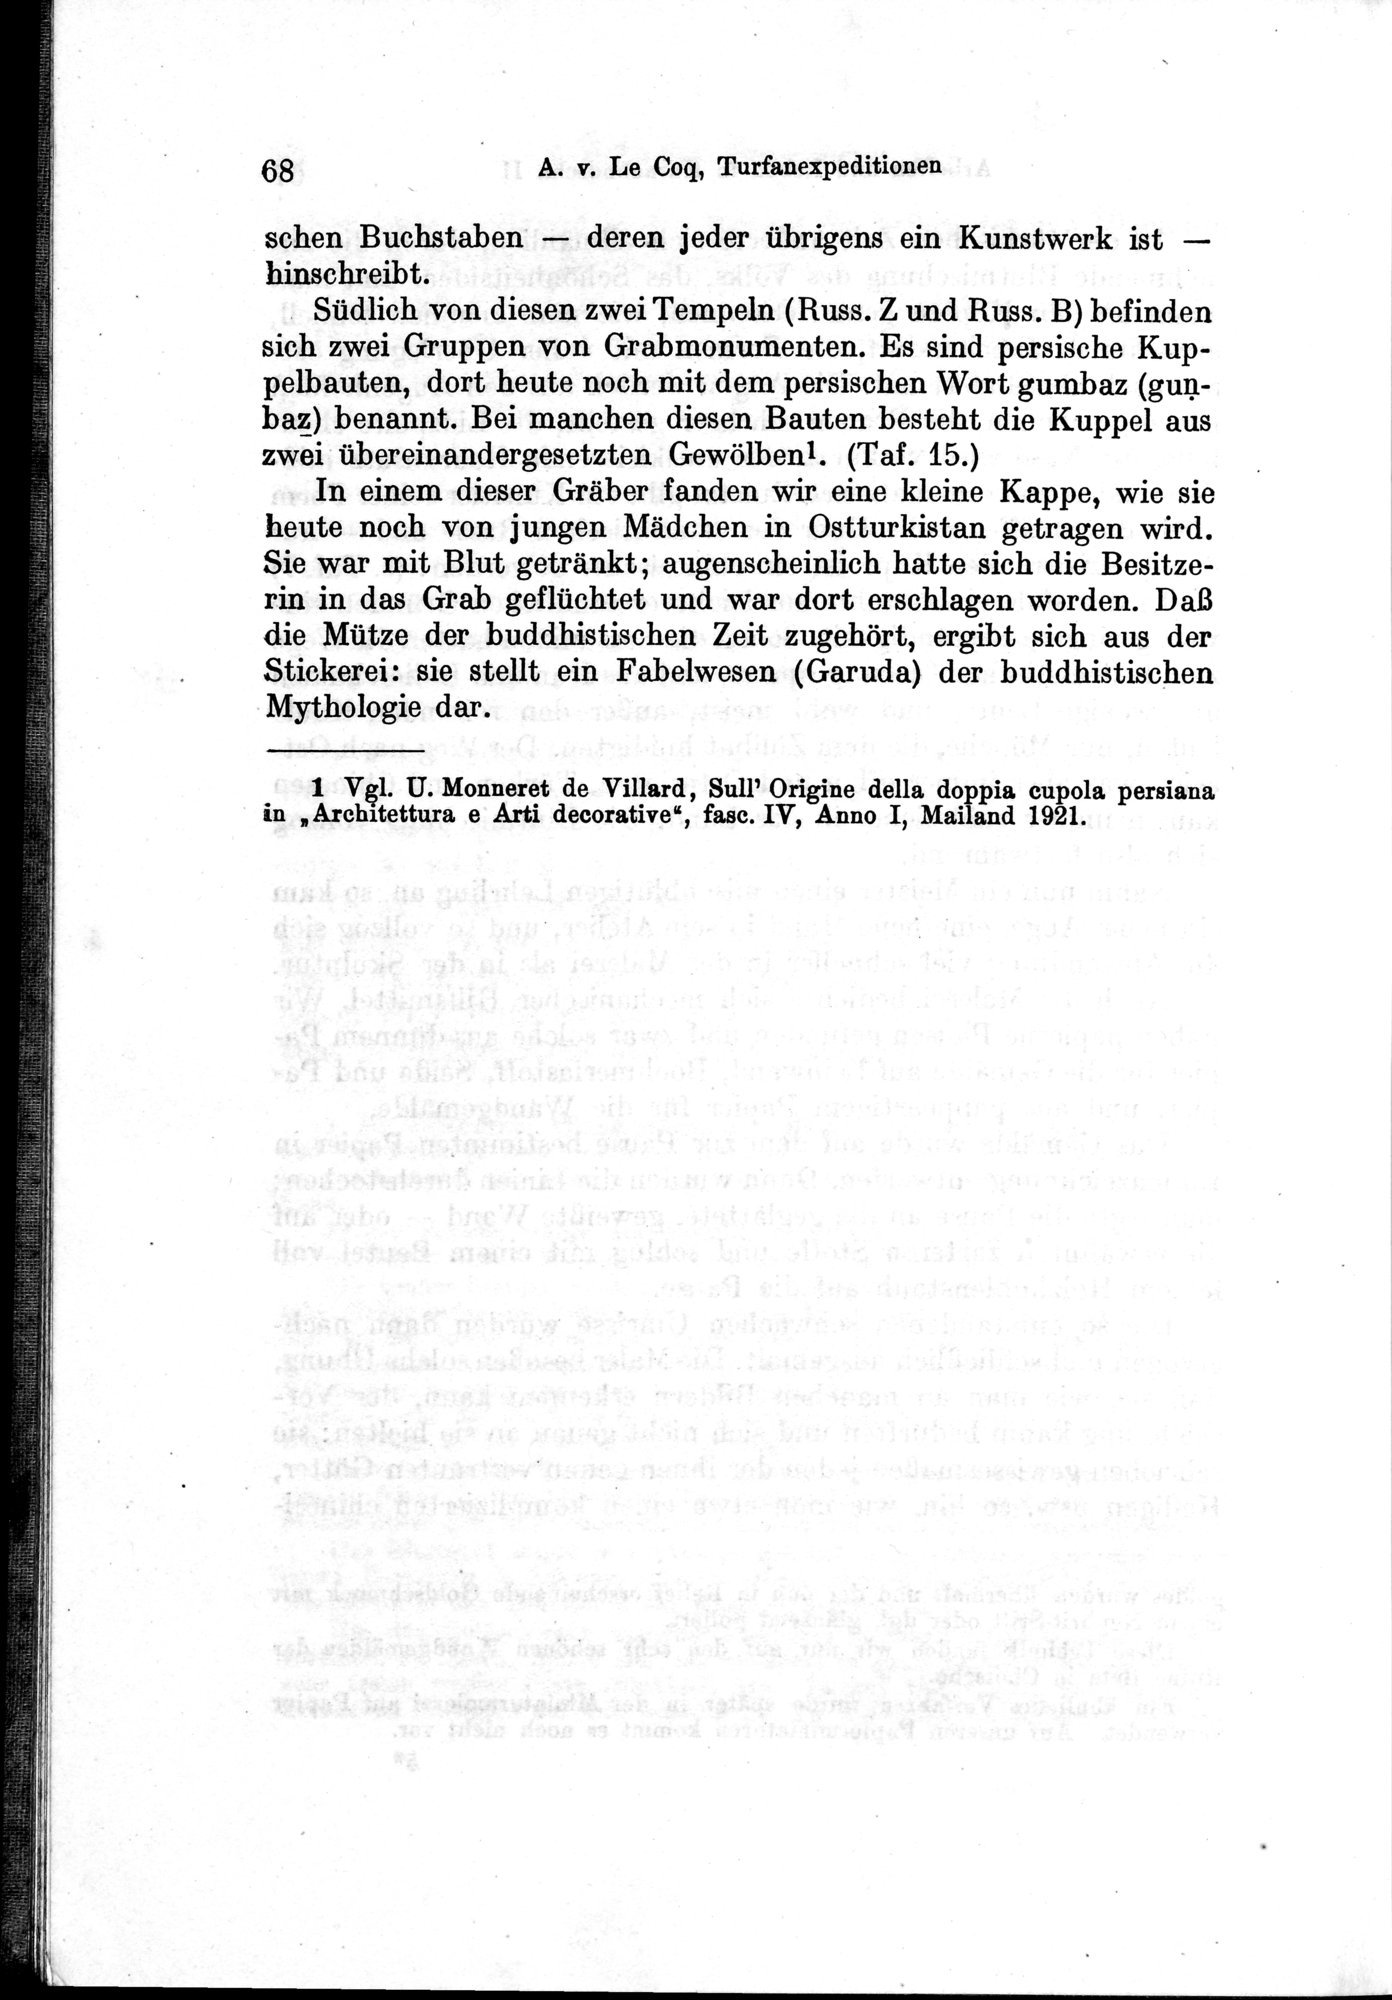 Auf Hellas Spuren in Ostturkistan : vol.1 / Page 102 (Grayscale High Resolution Image)